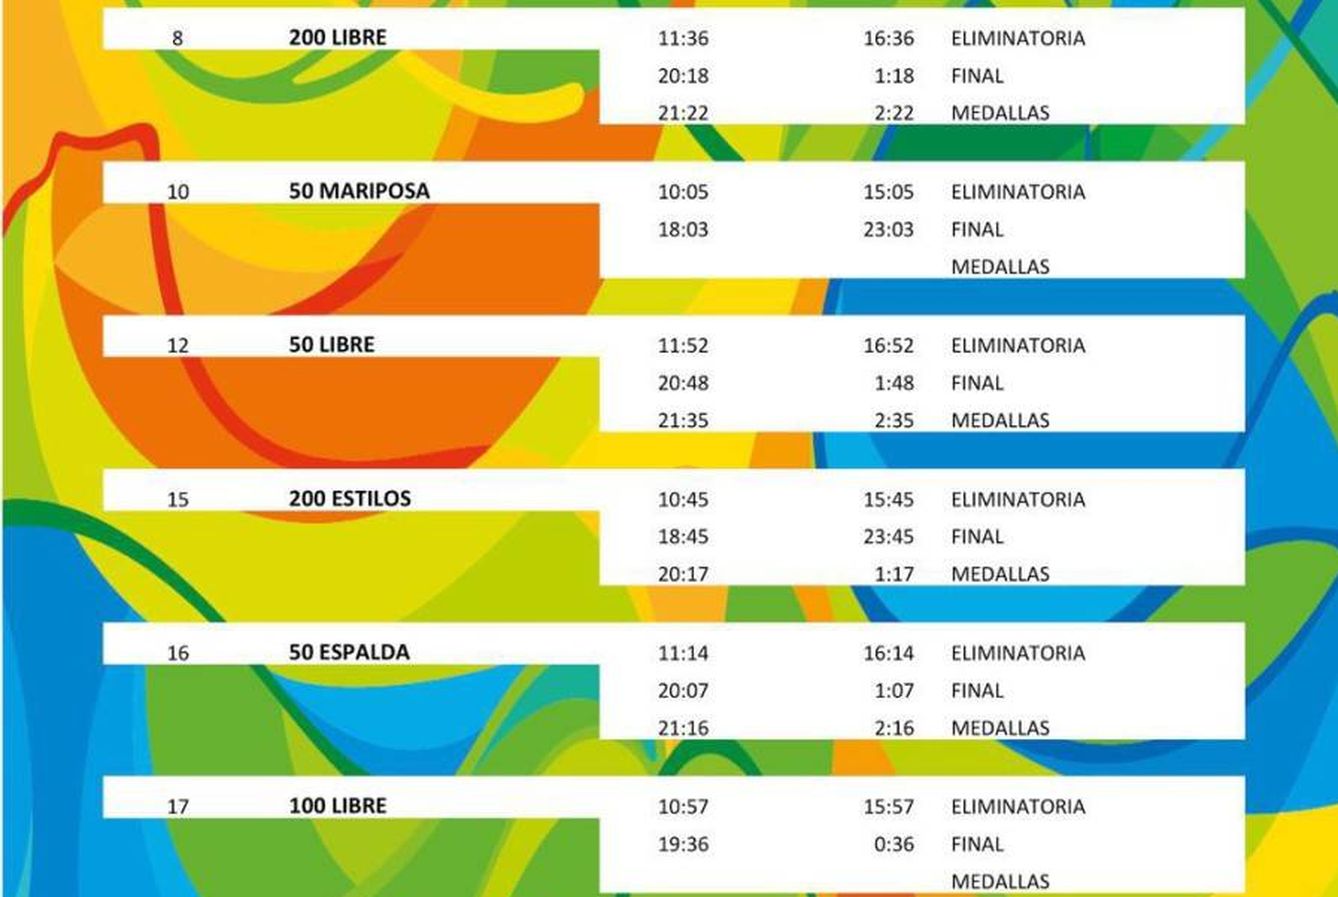 Horarios competición Teresa Perales en Río 2016 (Foto: www.teresaperales.es)